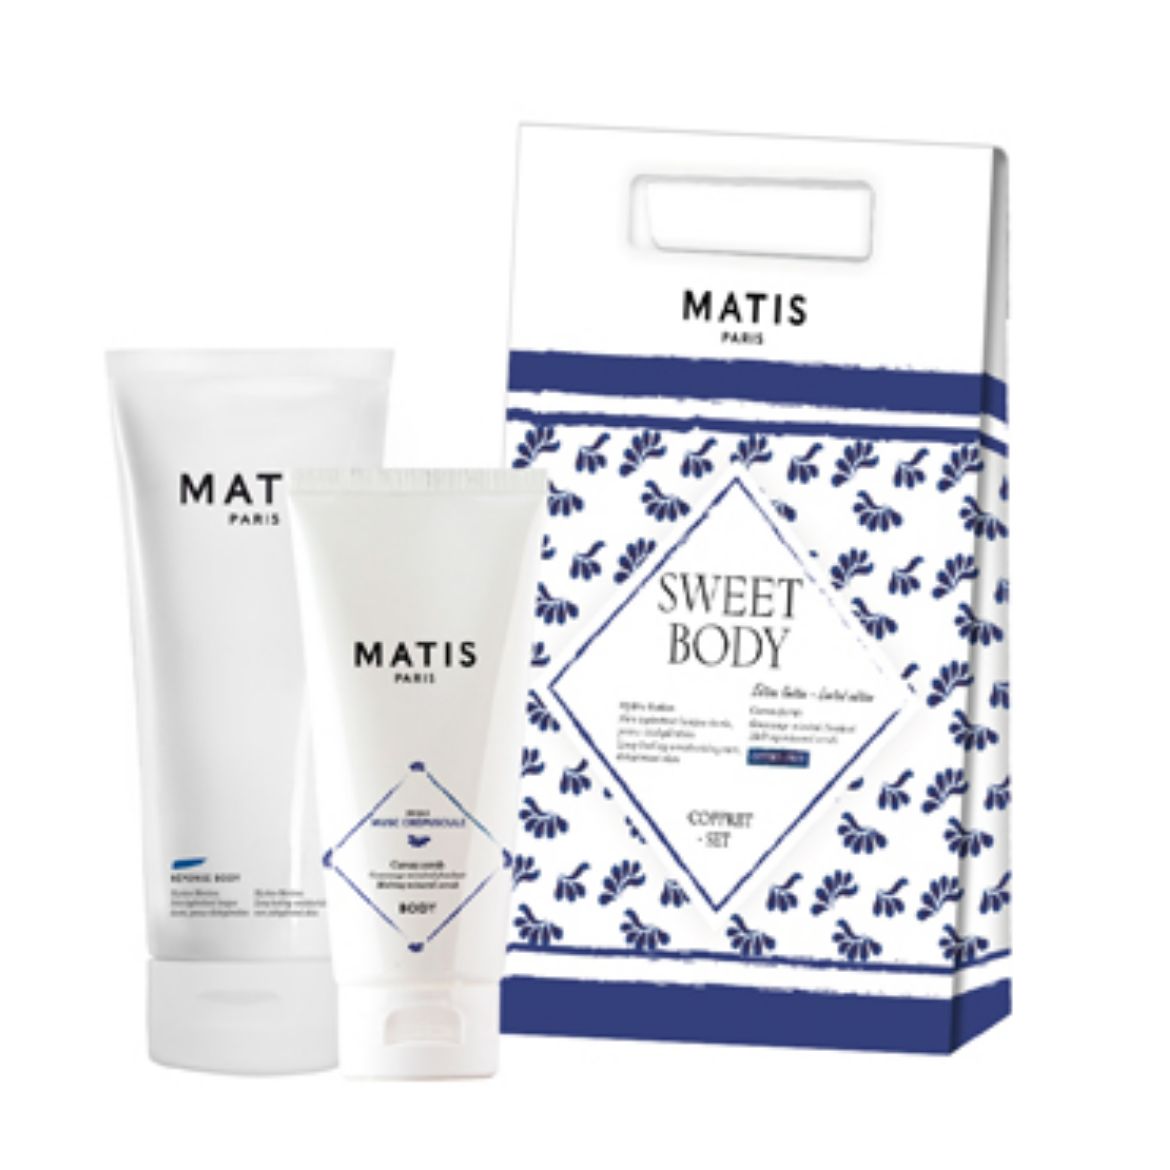 Image of Matis Sweet Body Set